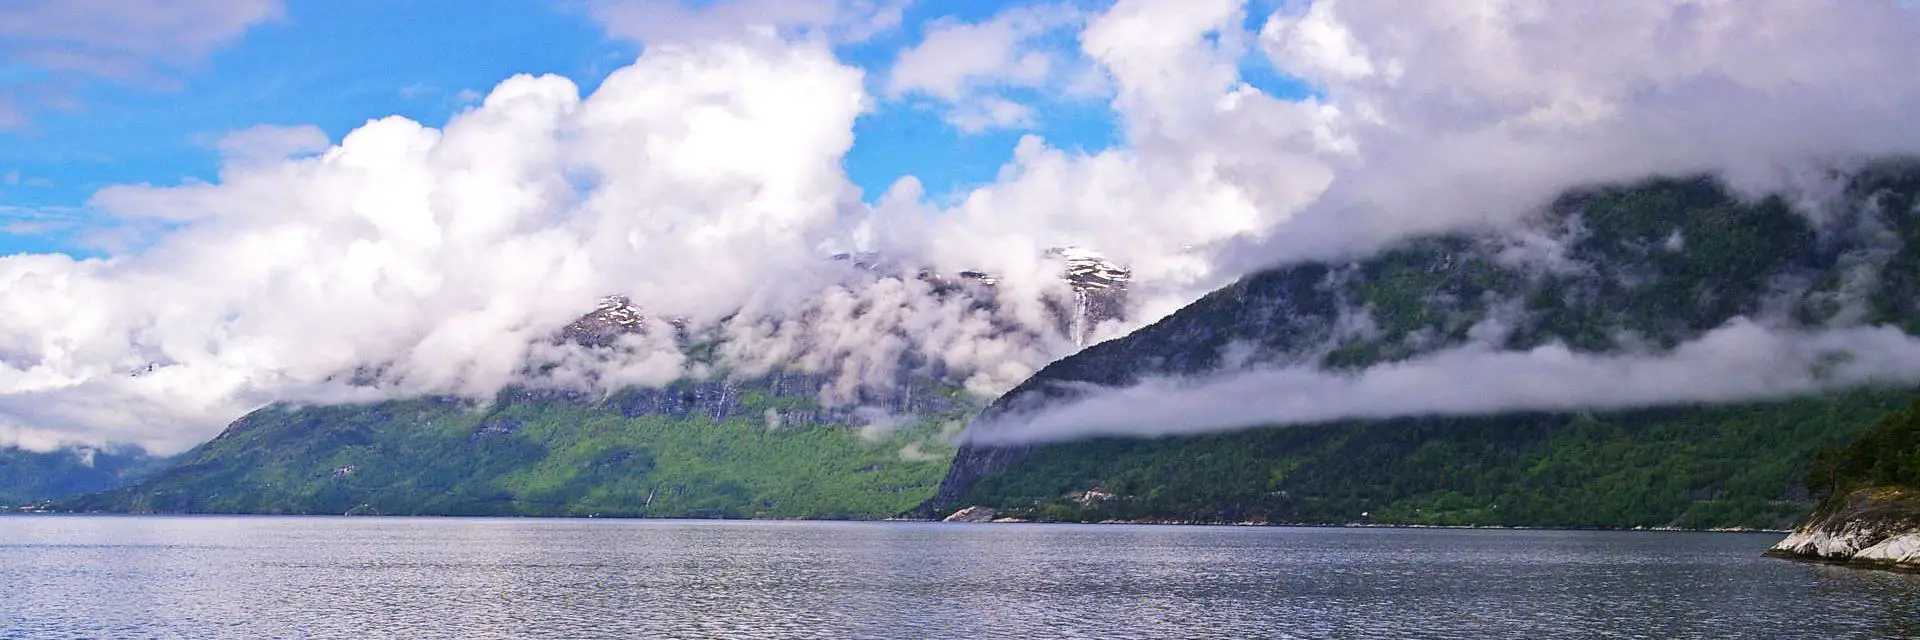 Hardangerfjord: Aktivtäten, Unterkünfte und Tipps